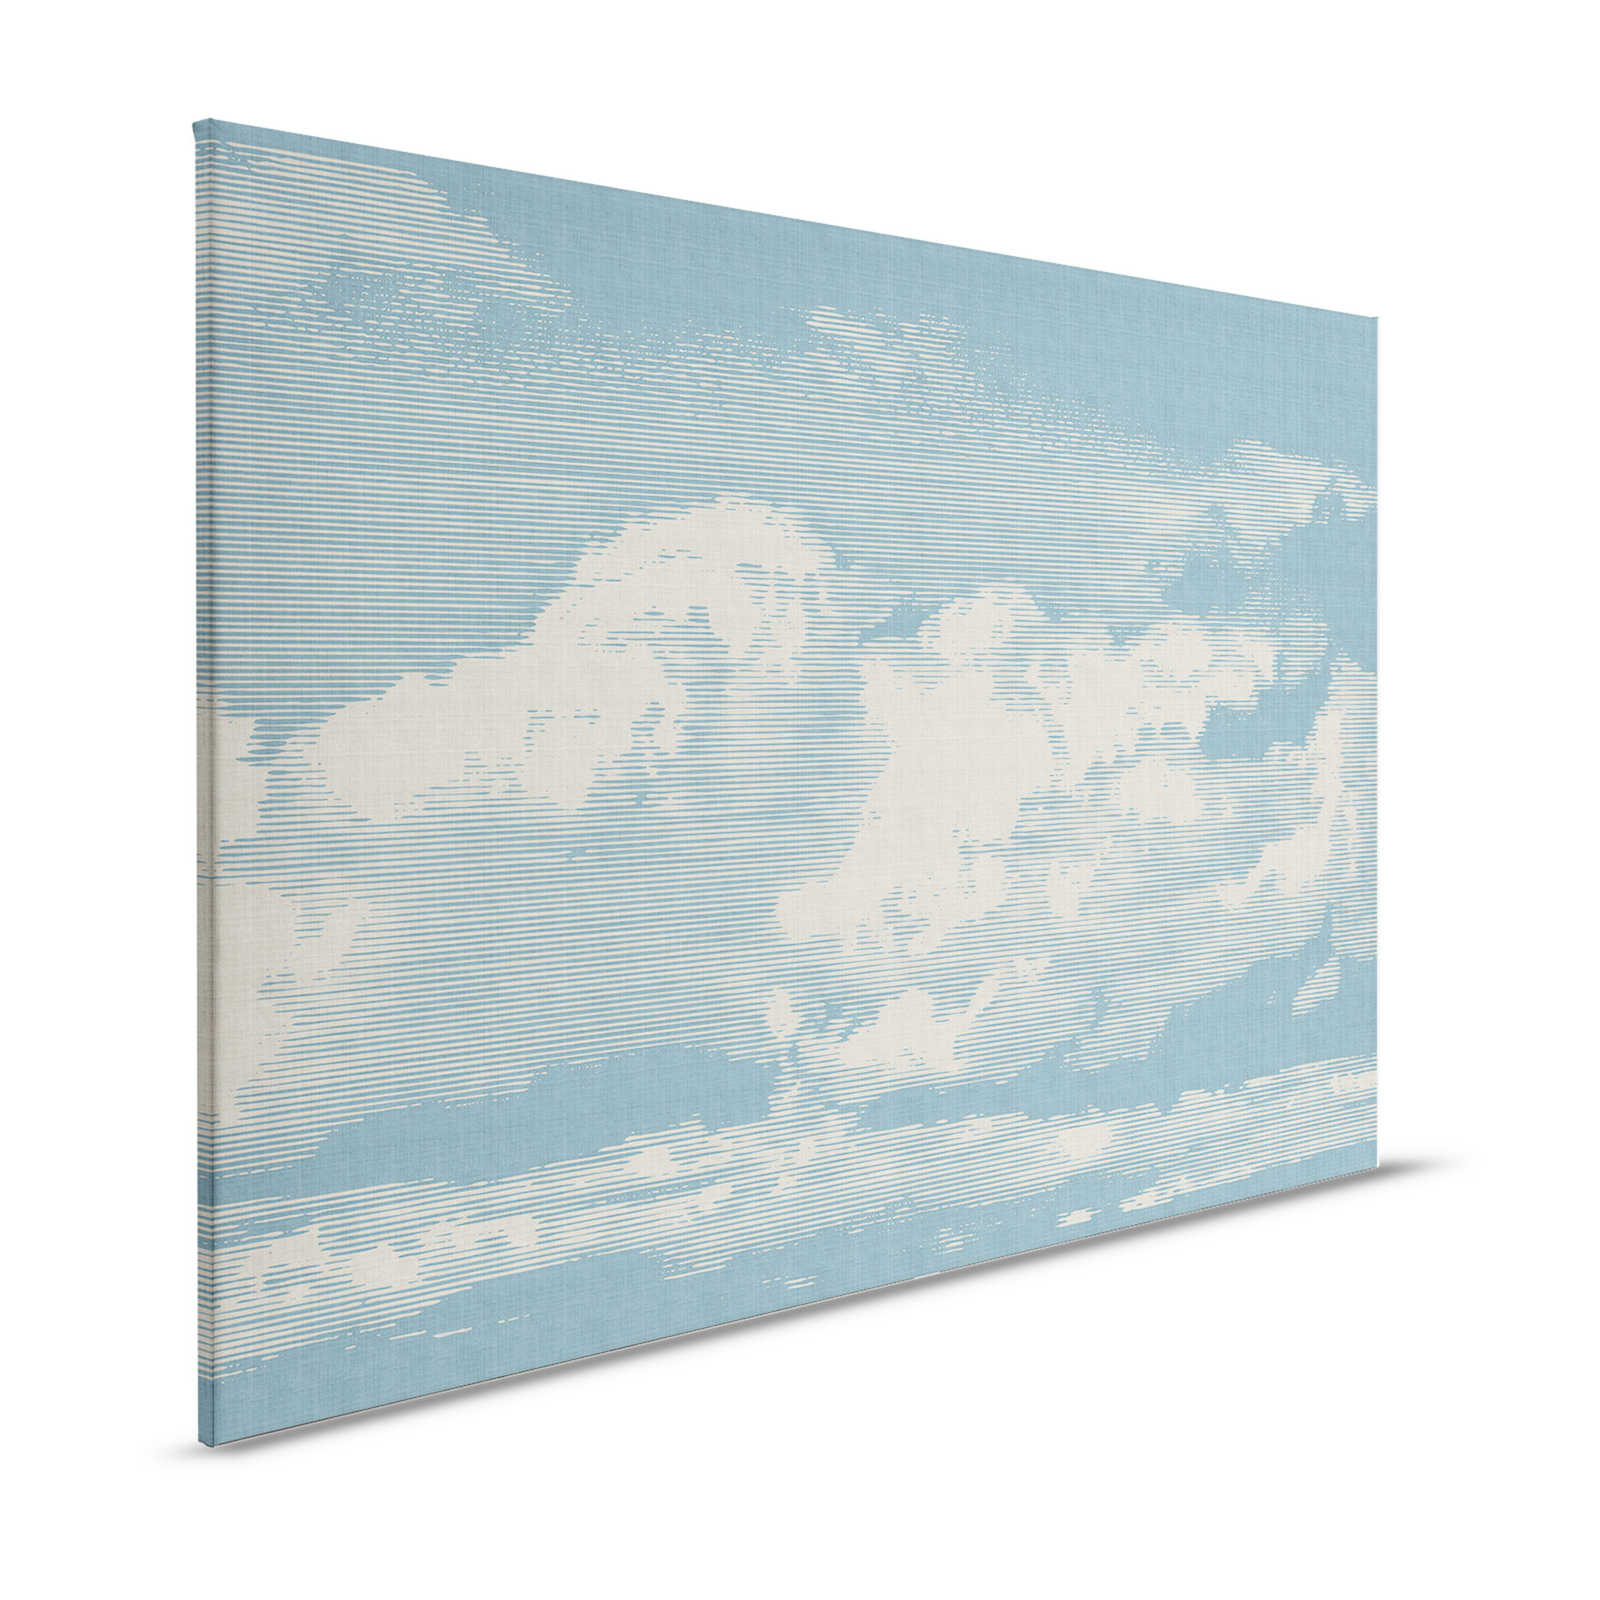 Clouds 1 - Hemels canvas schilderij met wolkenmotief in natuurlijke linnenlook - 1.20 m x 0.80 m
